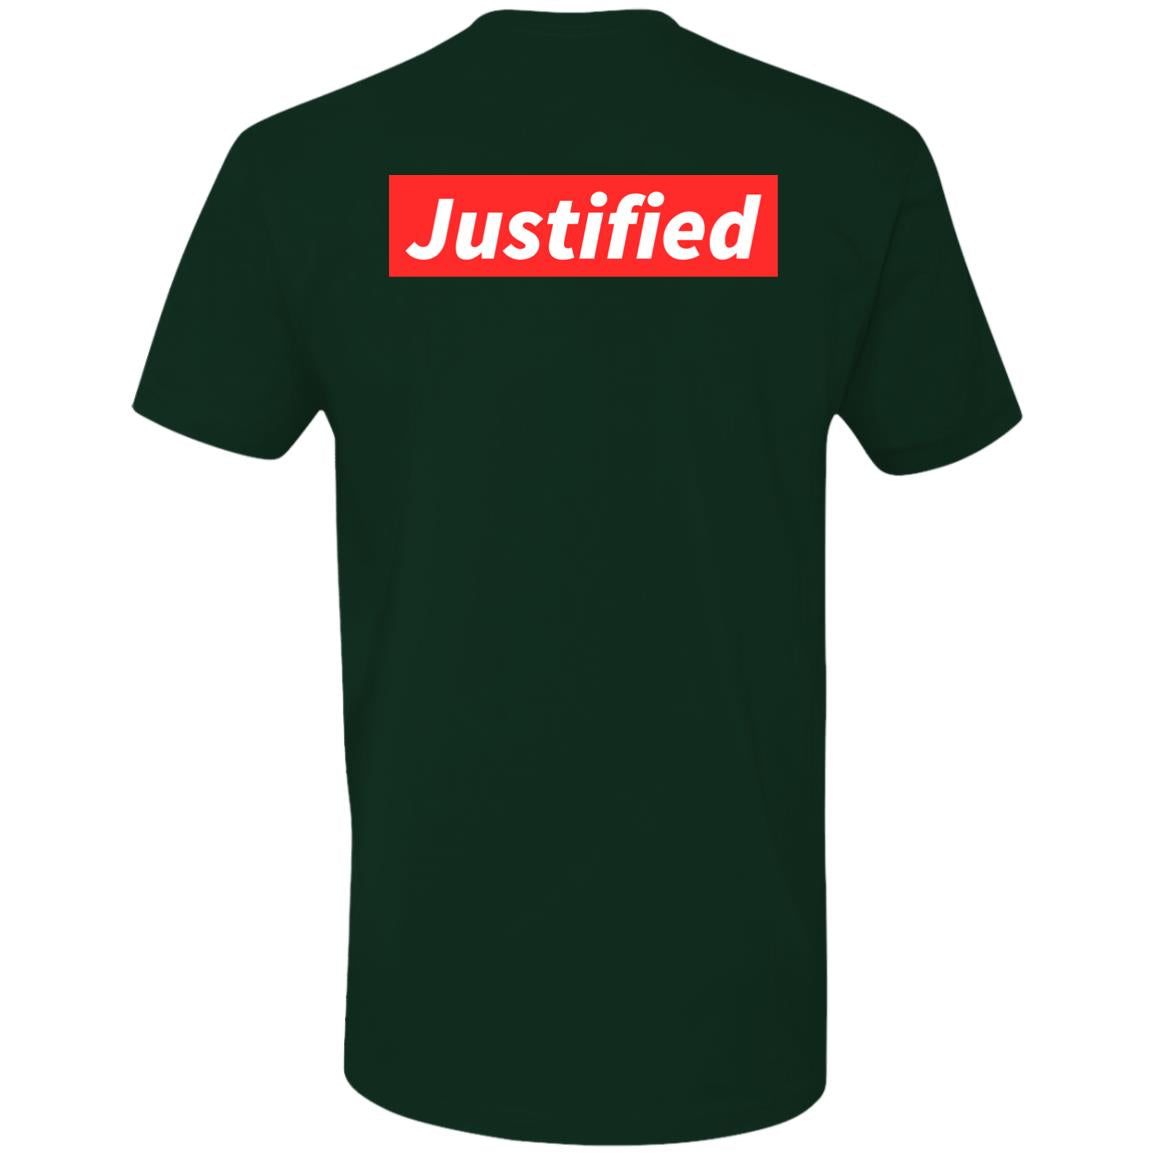 Justified (Unisex Tee)